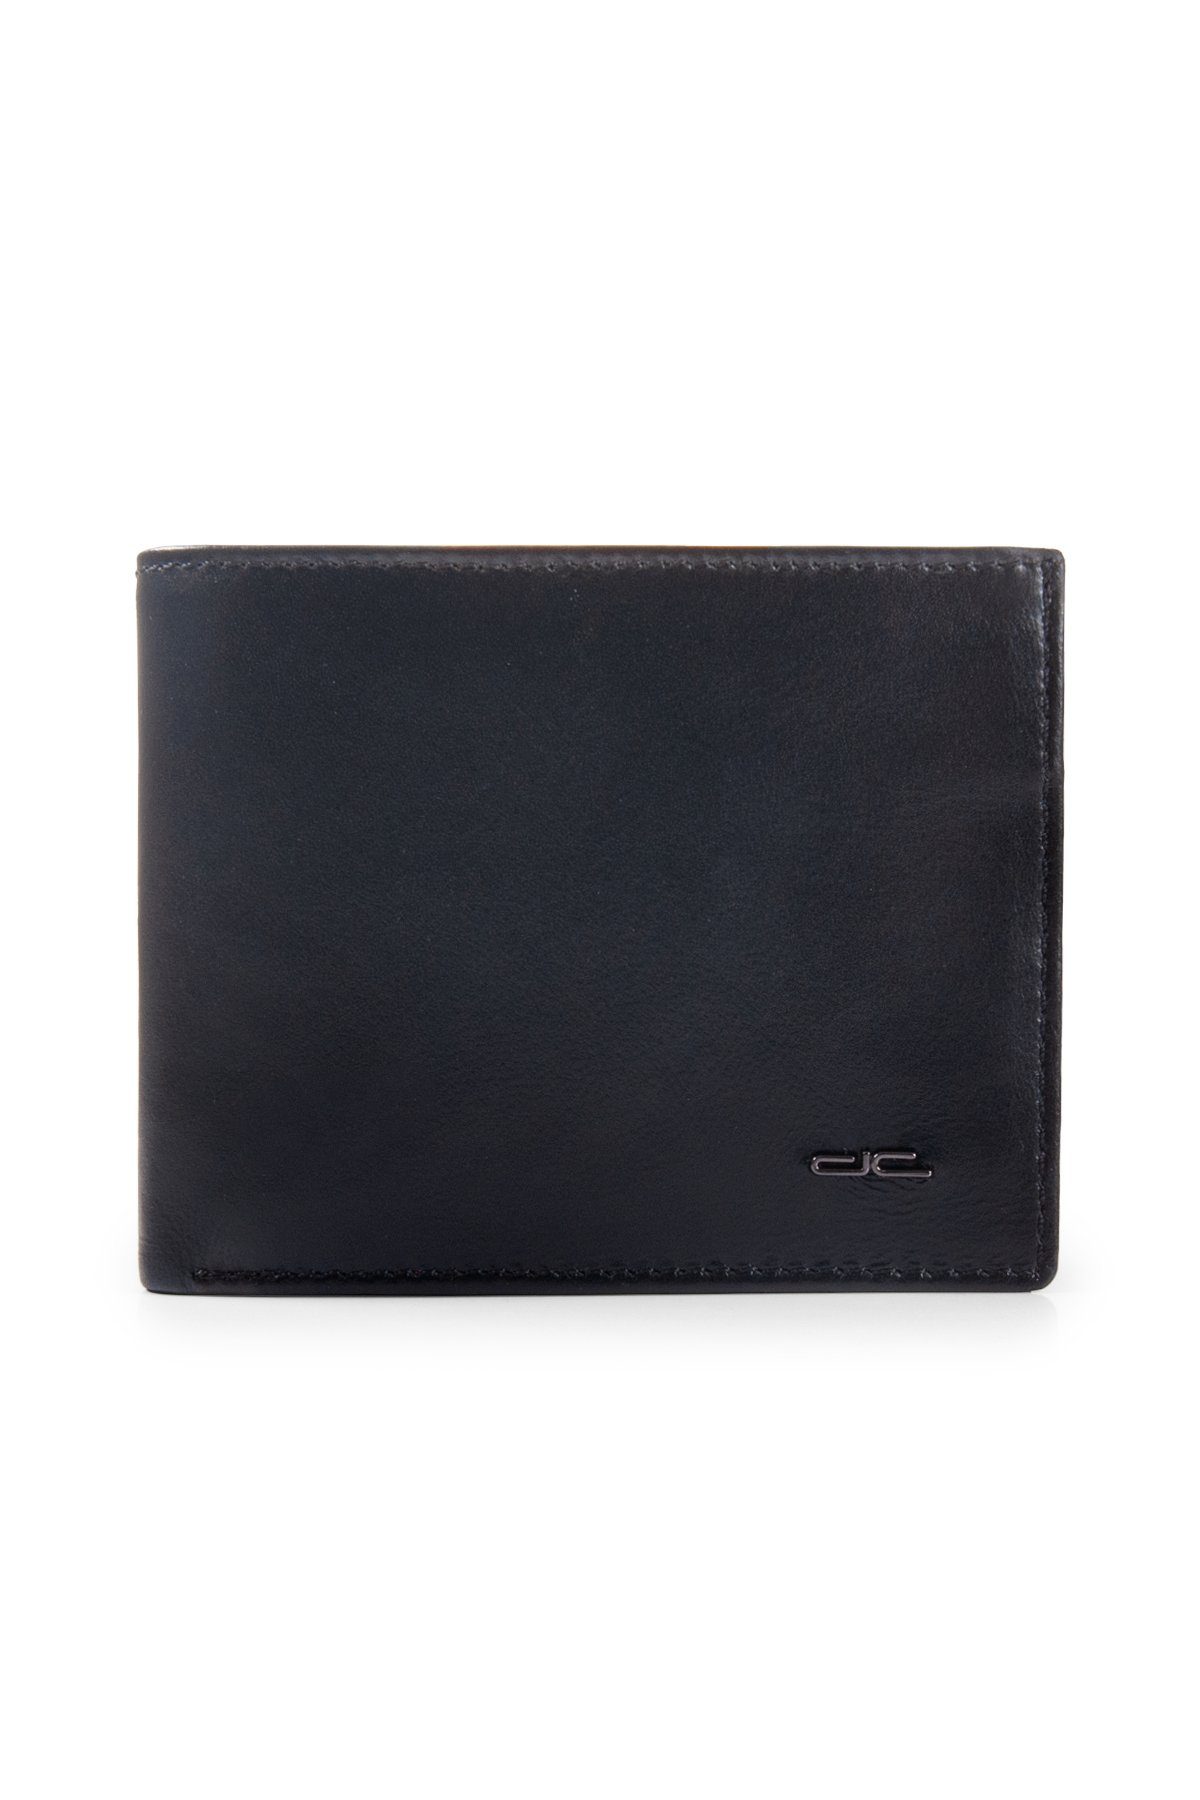 dc Dericompany Brieftasche BD00935, Herren Lammleder Brieftasche aus echtem Leder, Geldbörse, Portemonnaie, Portefeuille